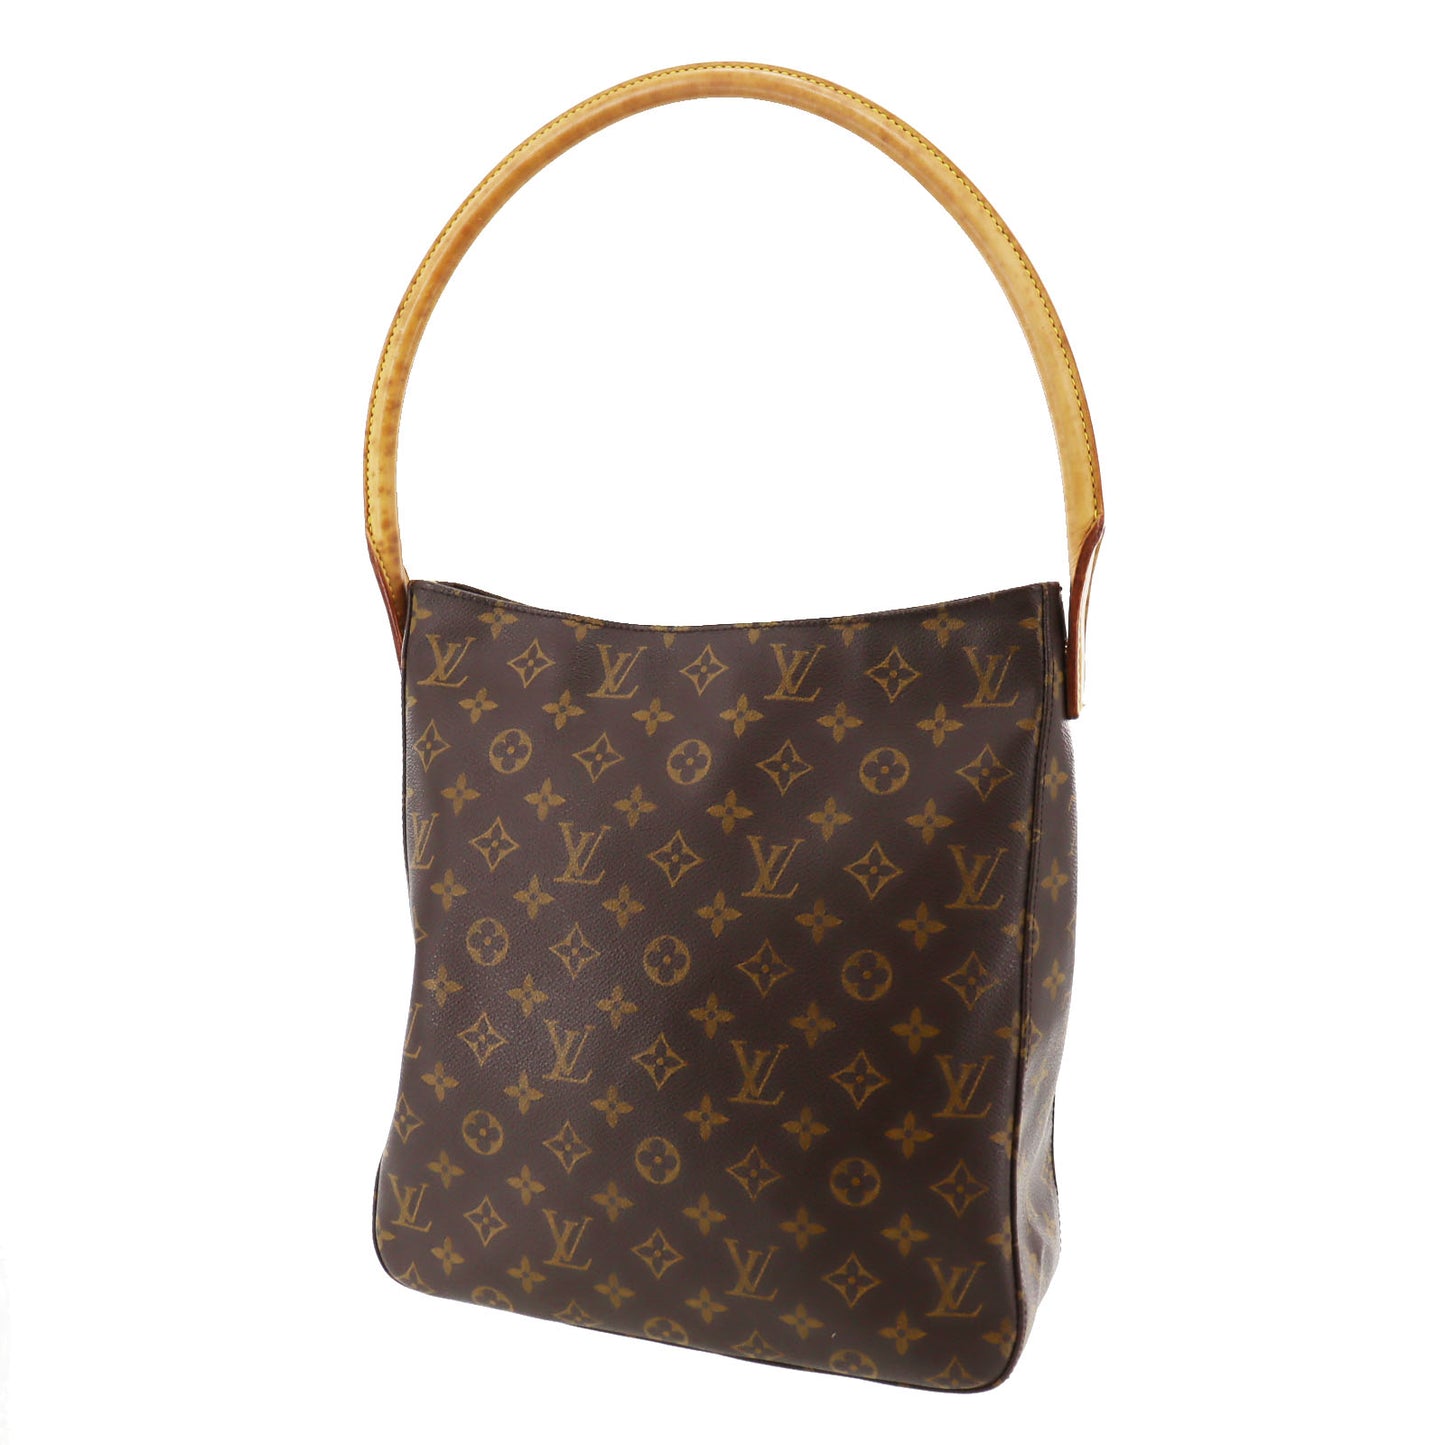 A Louis Vuitton Croissant Bag, monogrammed canvas, 10.5 length